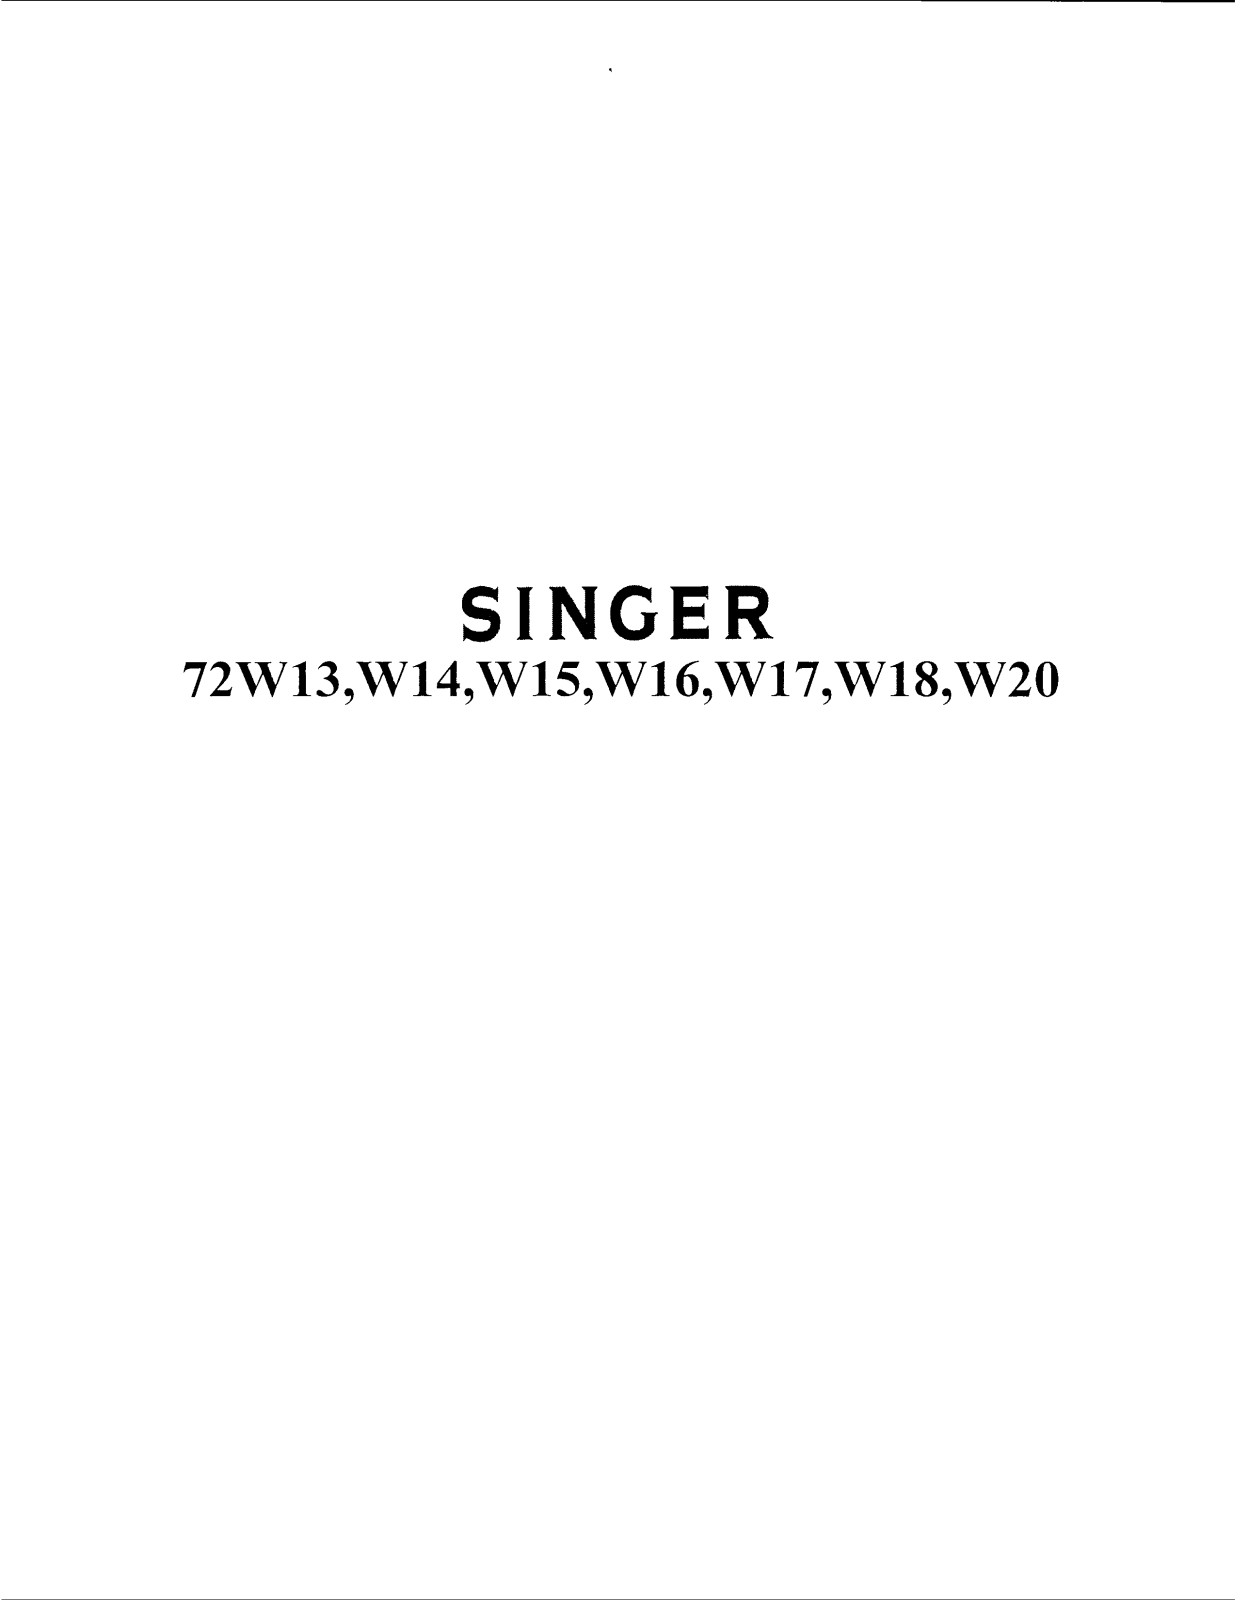 Singer 72W15, 72W17, 72W16, 72W18, 72W14 Instruction Manual